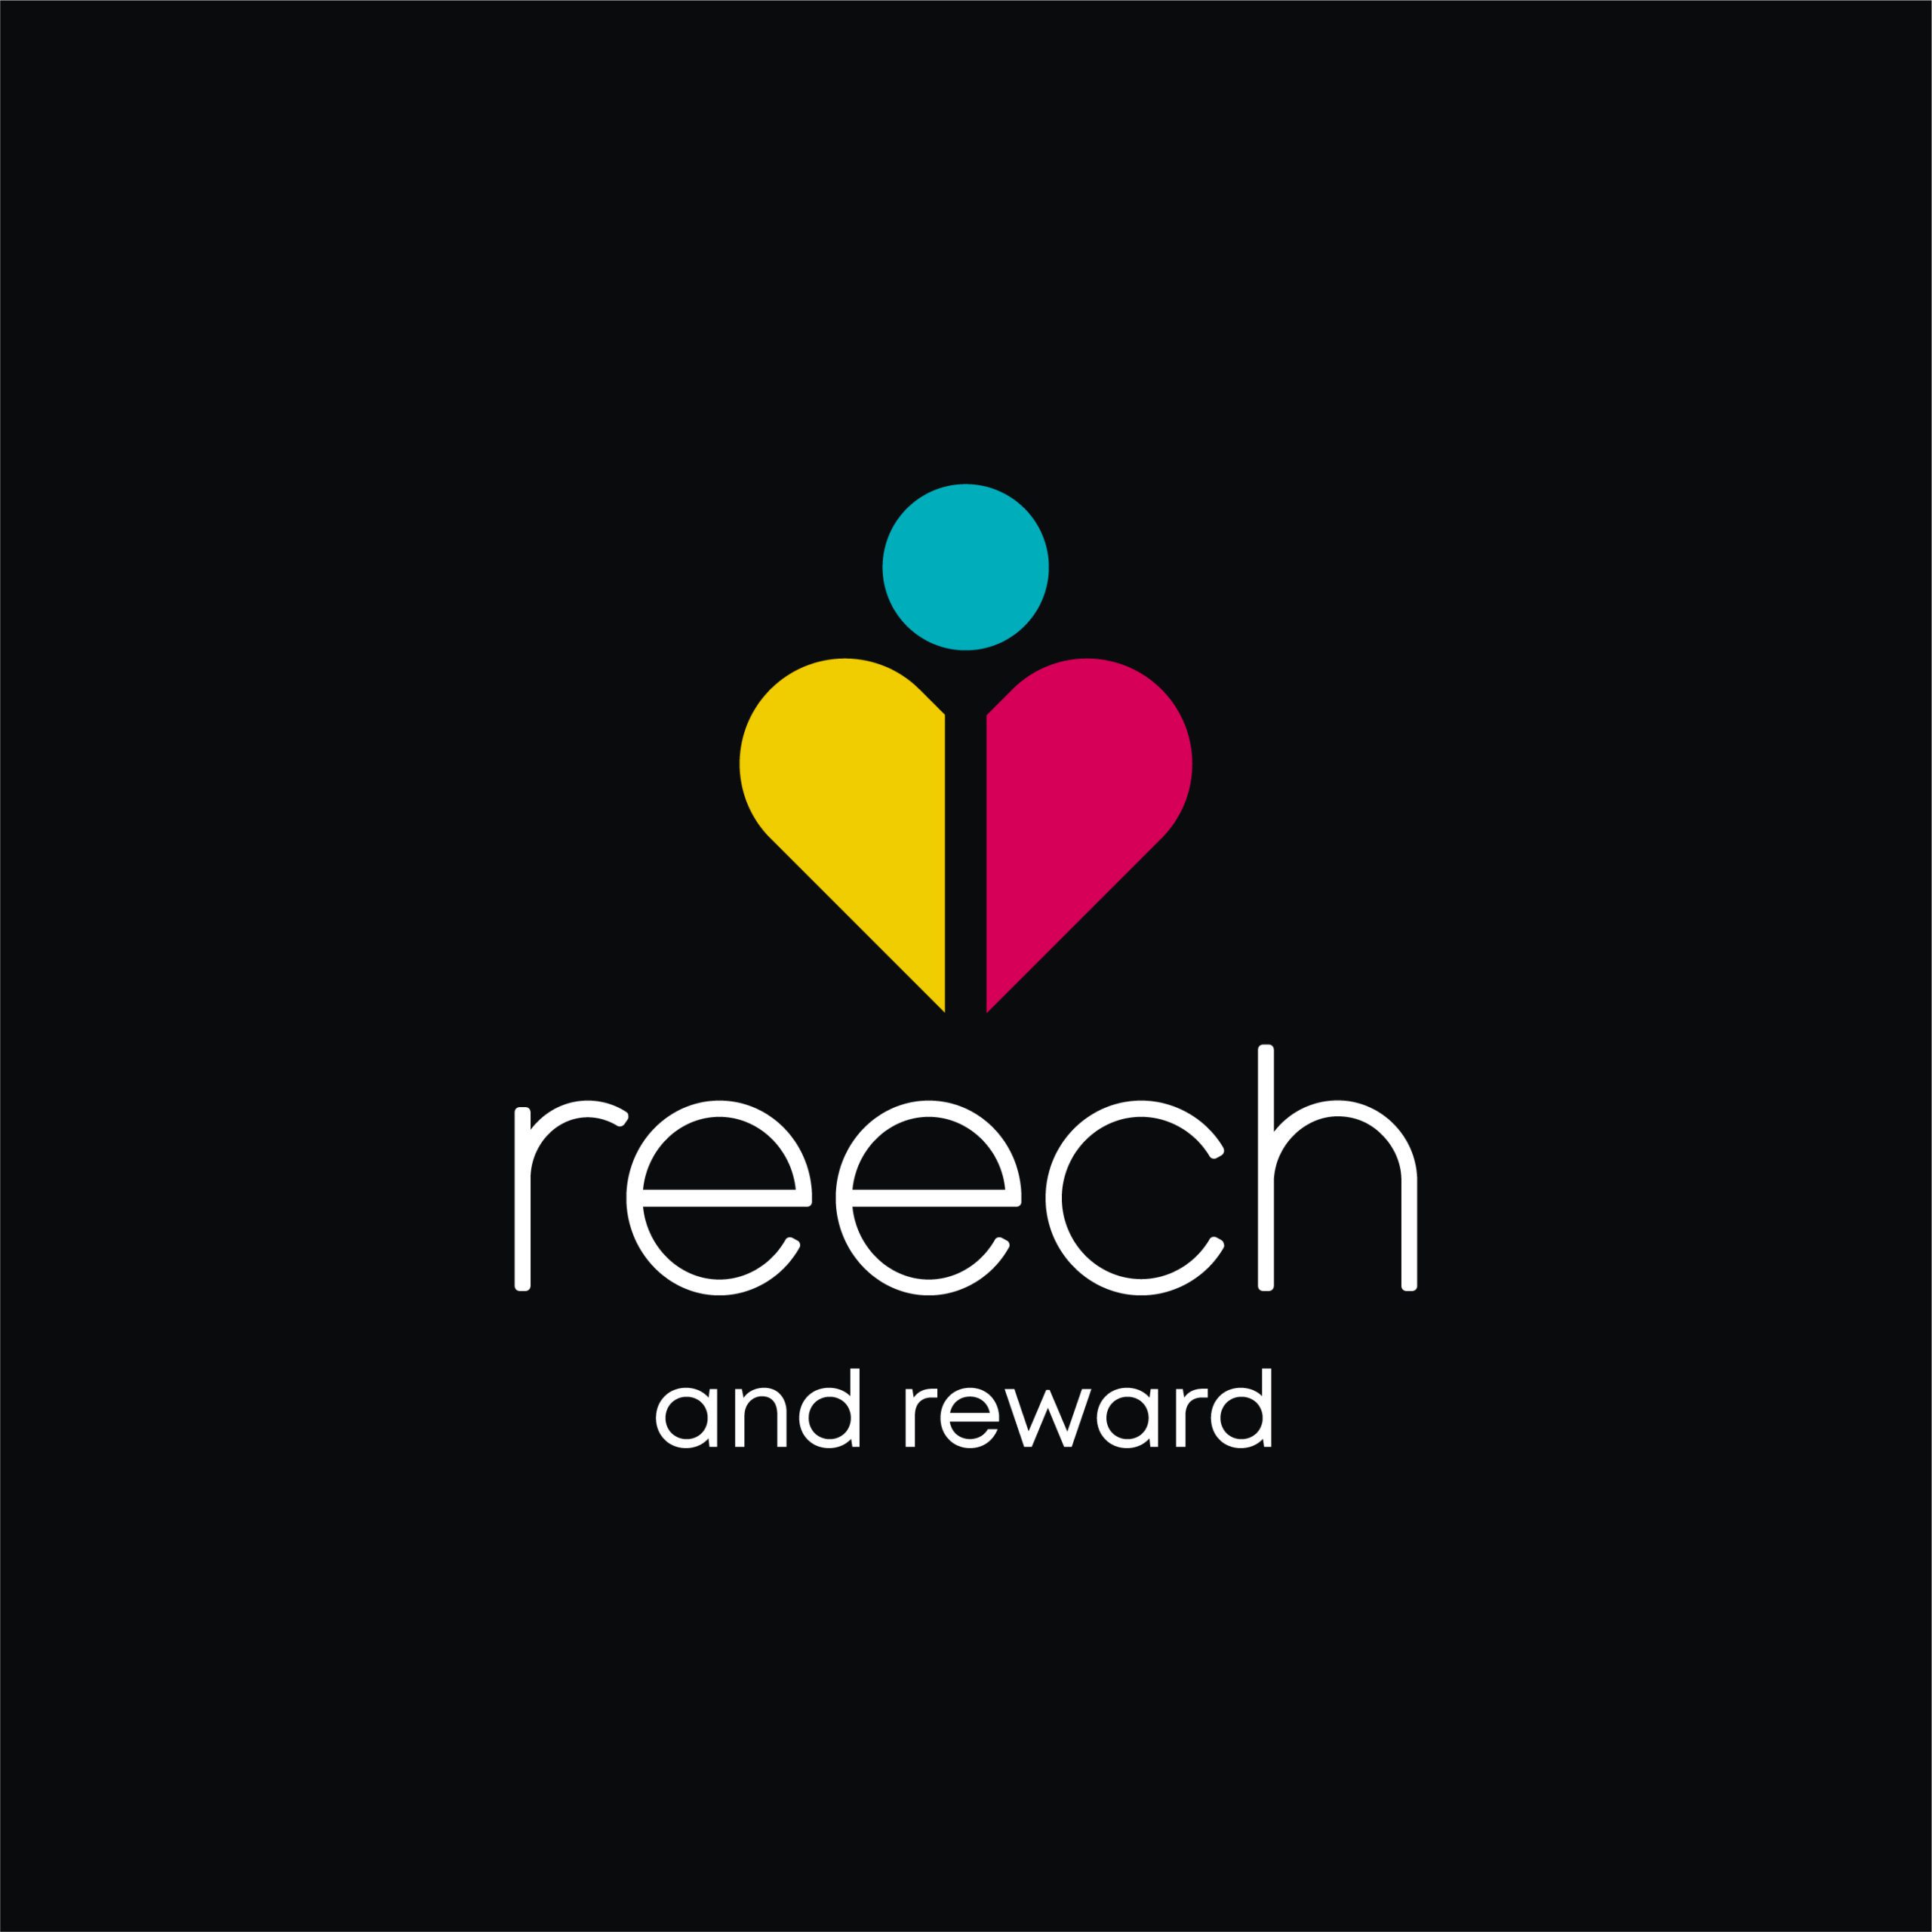 Reech+Reward@2x